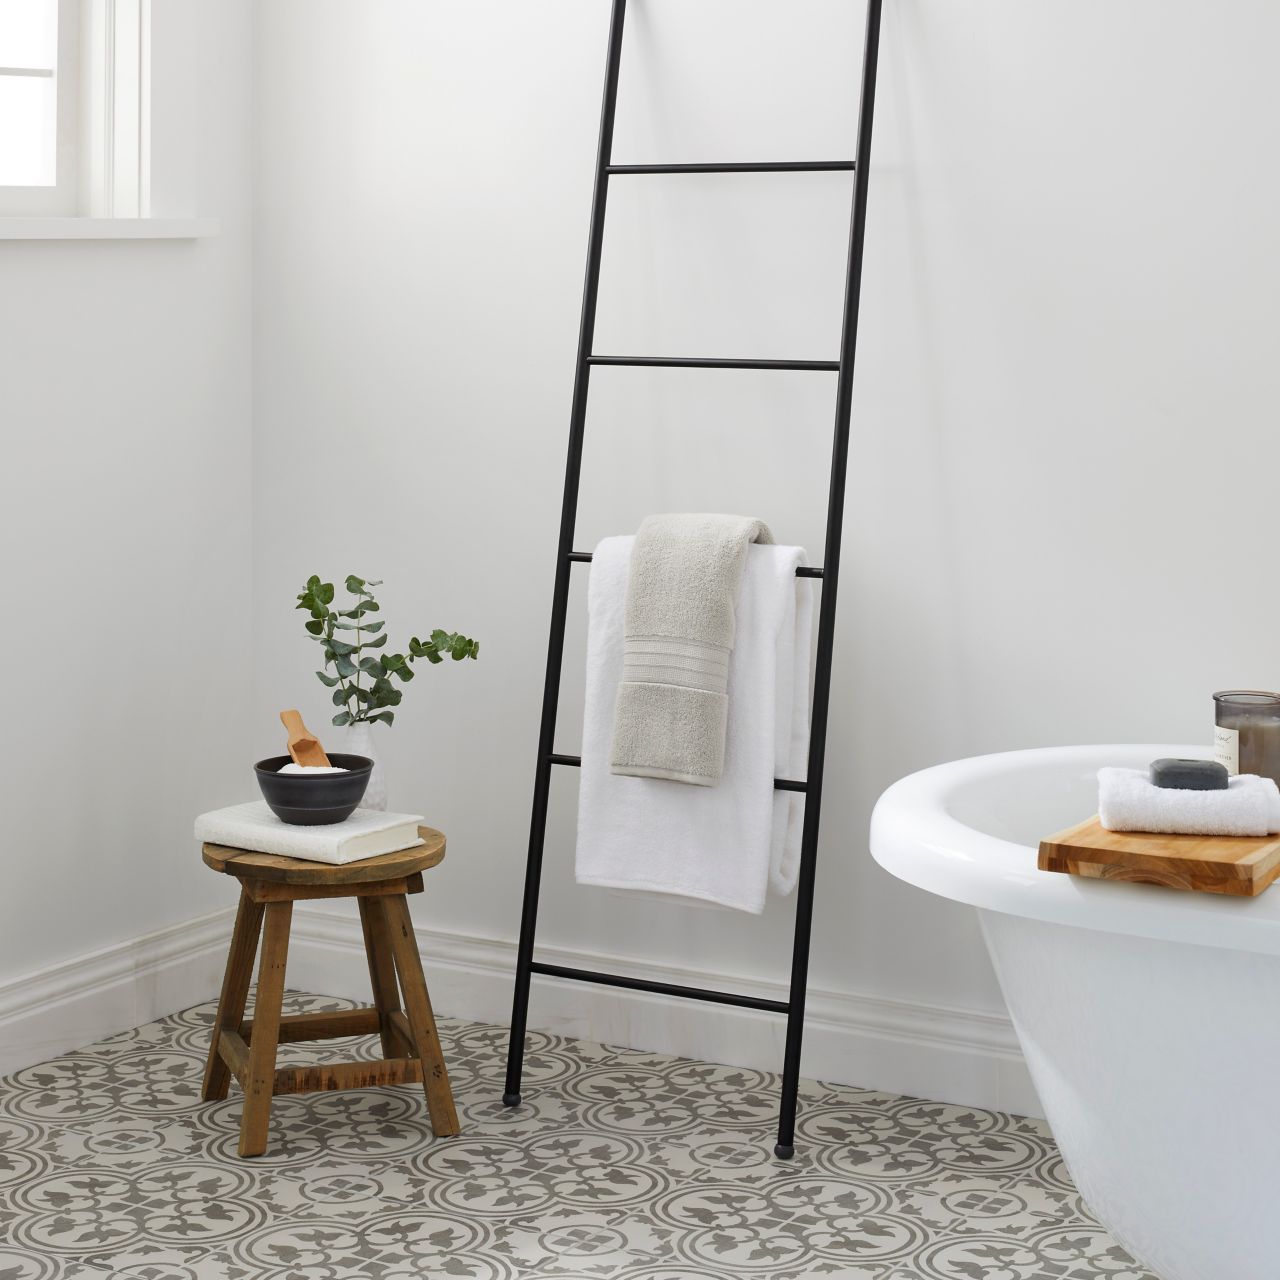 Bathroom Shower Tile | The Tile Shop